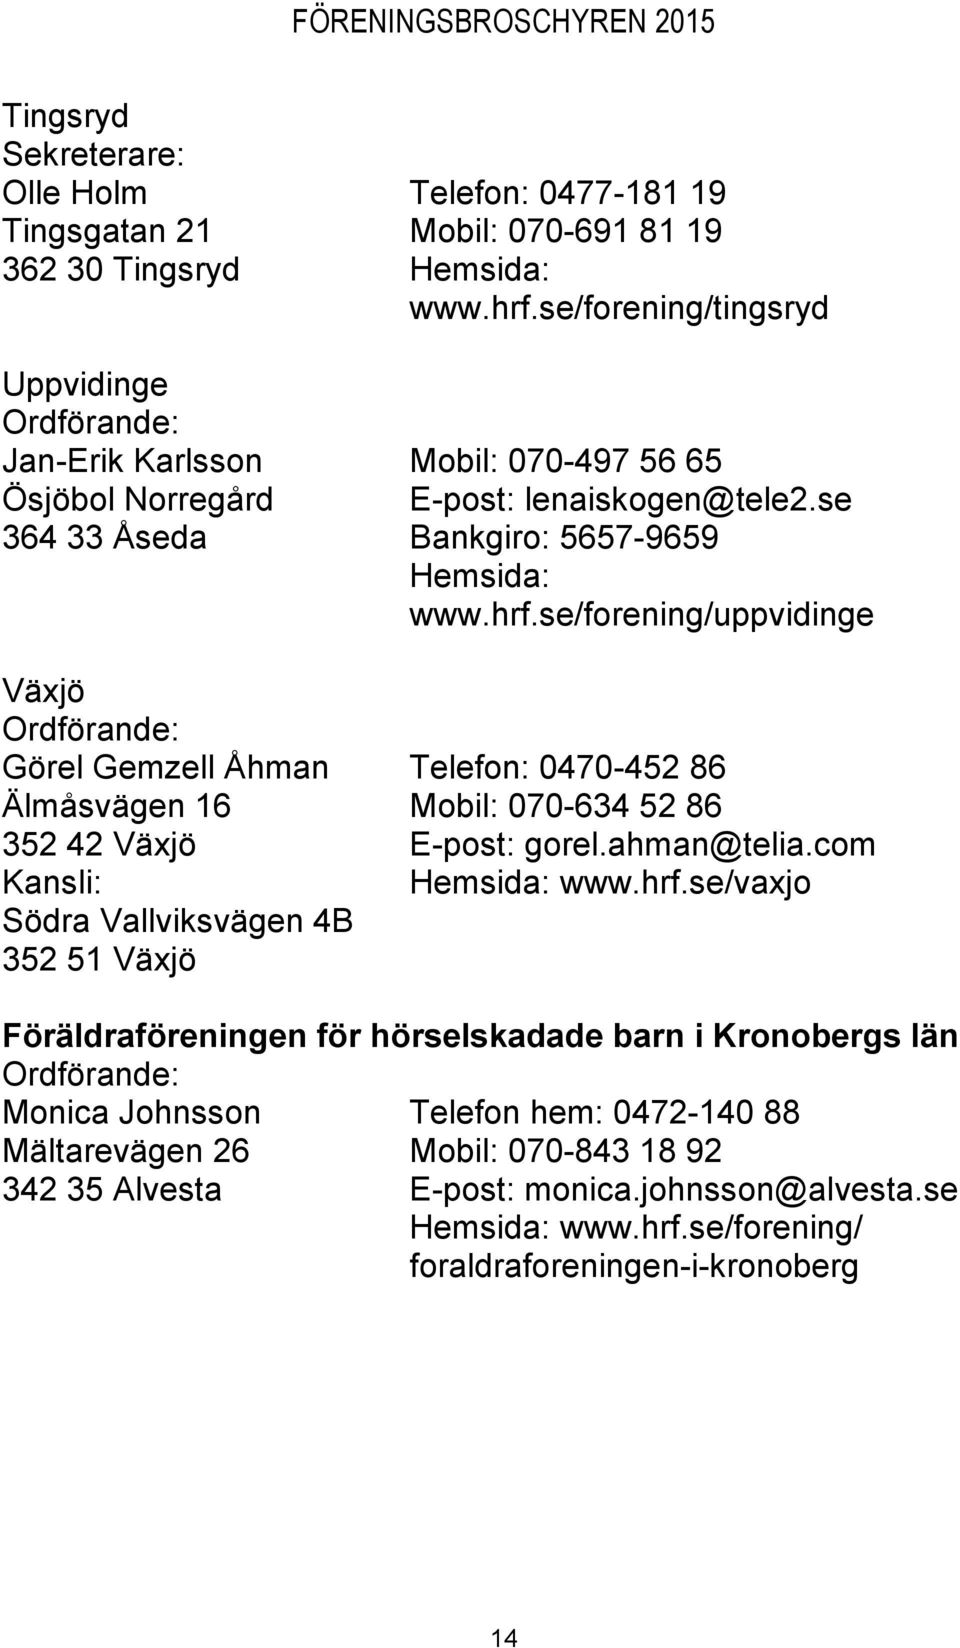 se/forening/uppvidinge Växjö Görel Gemzell Åhman Telefon: 0470-452 86 Älmåsvägen 16 Mobil: 070-634 52 86 352 42 Växjö E-post: gorel.ahman@telia.com Hemsida: www.hrf.